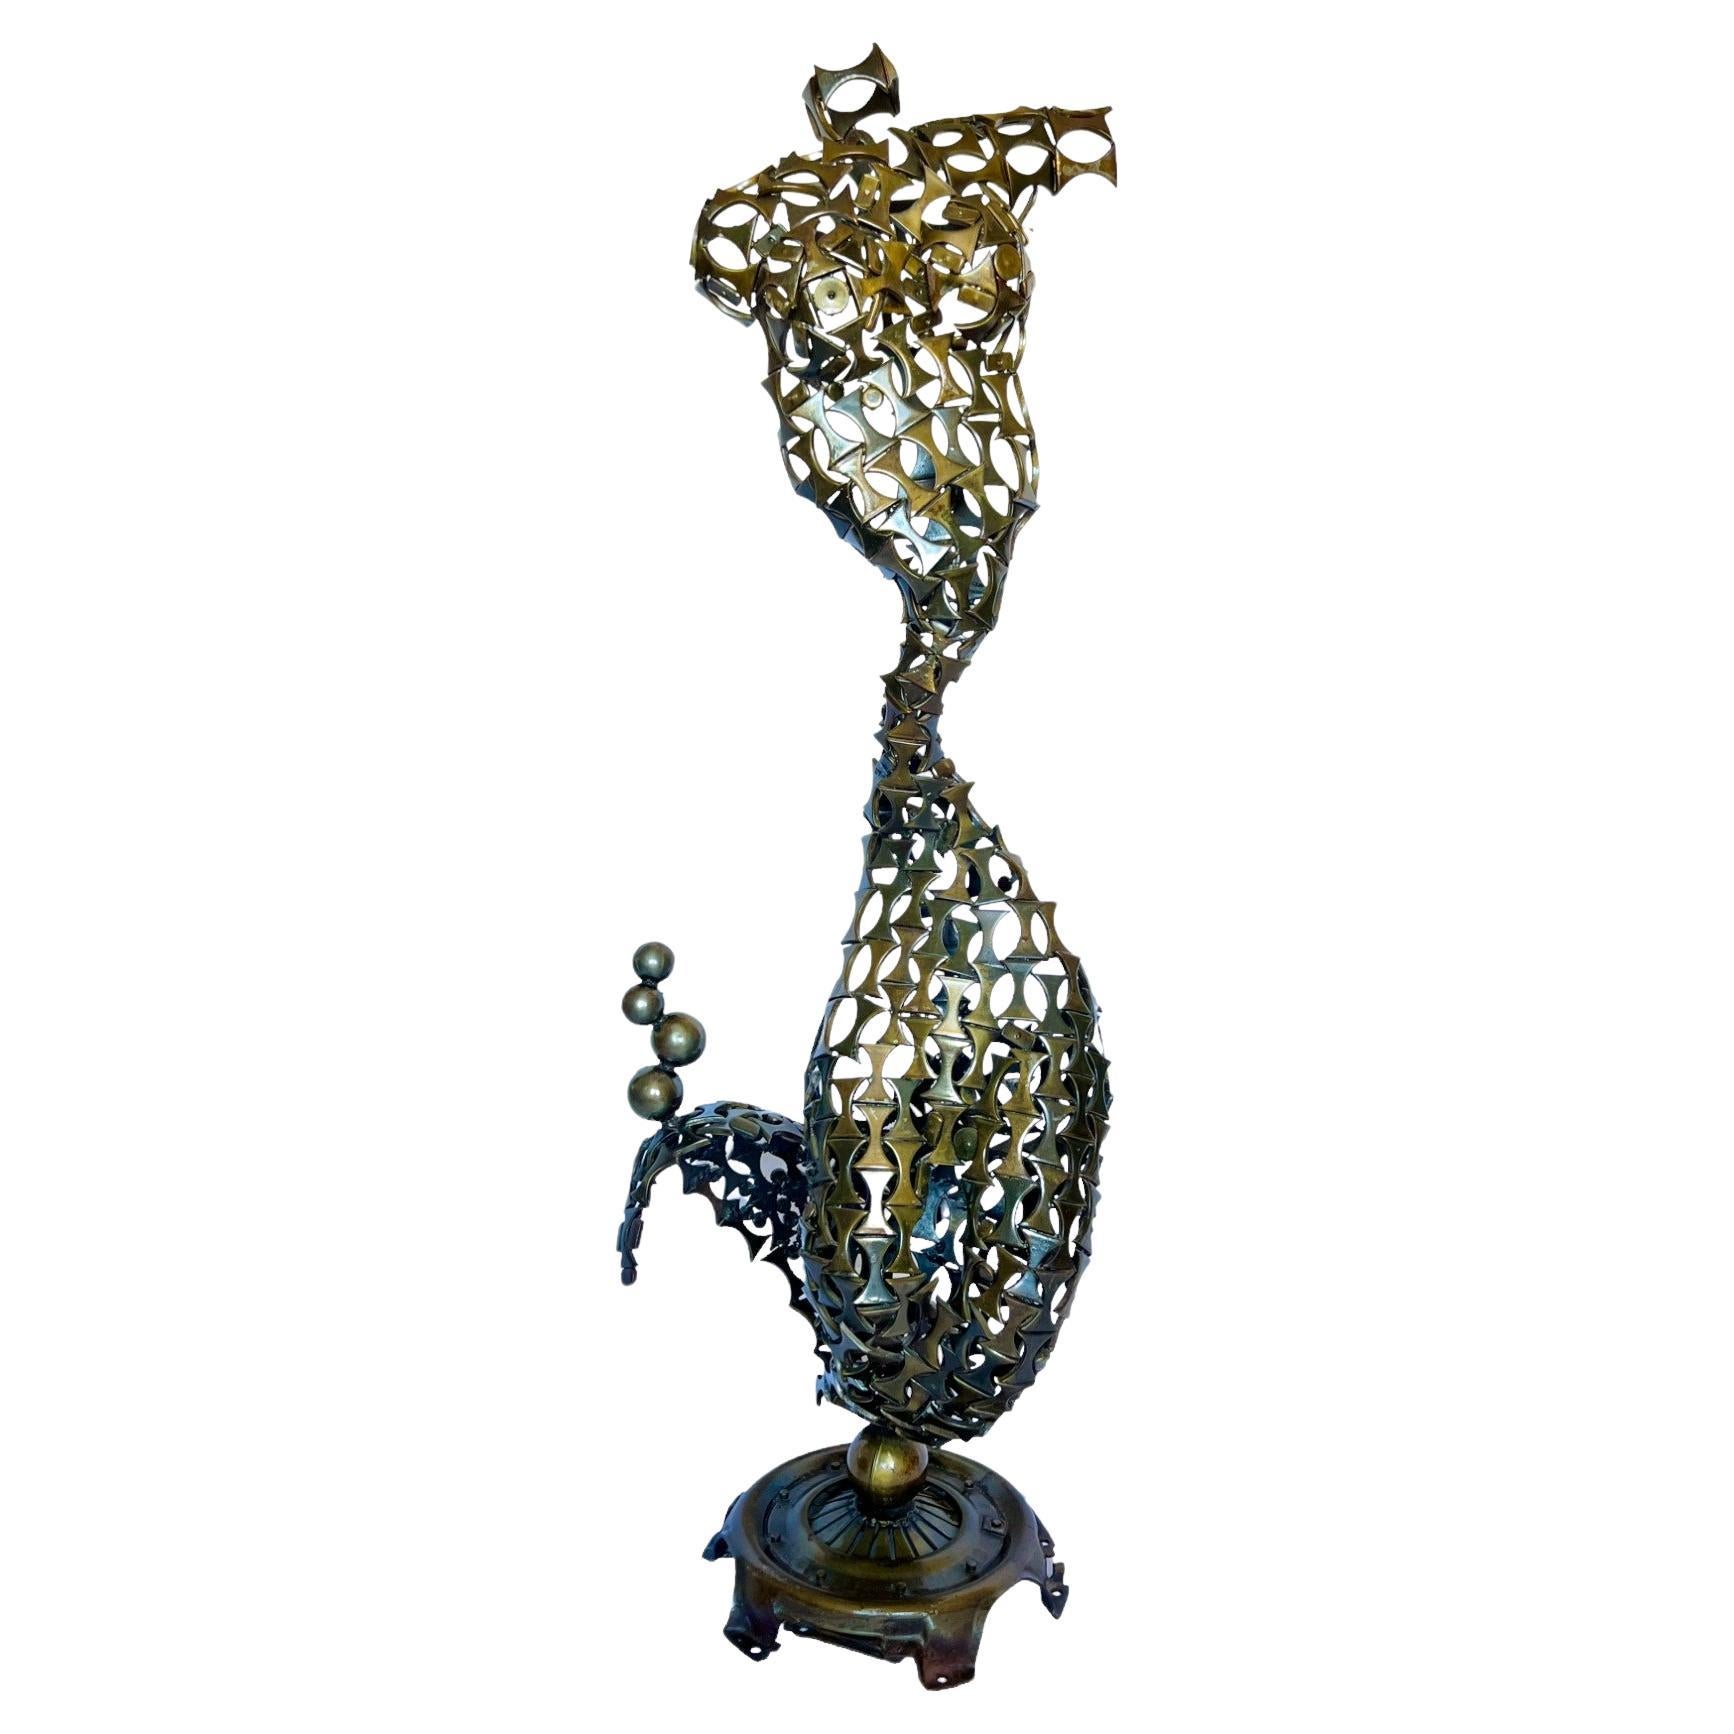 Brutalist Welded Metal Abstract Mermaid Sculpture